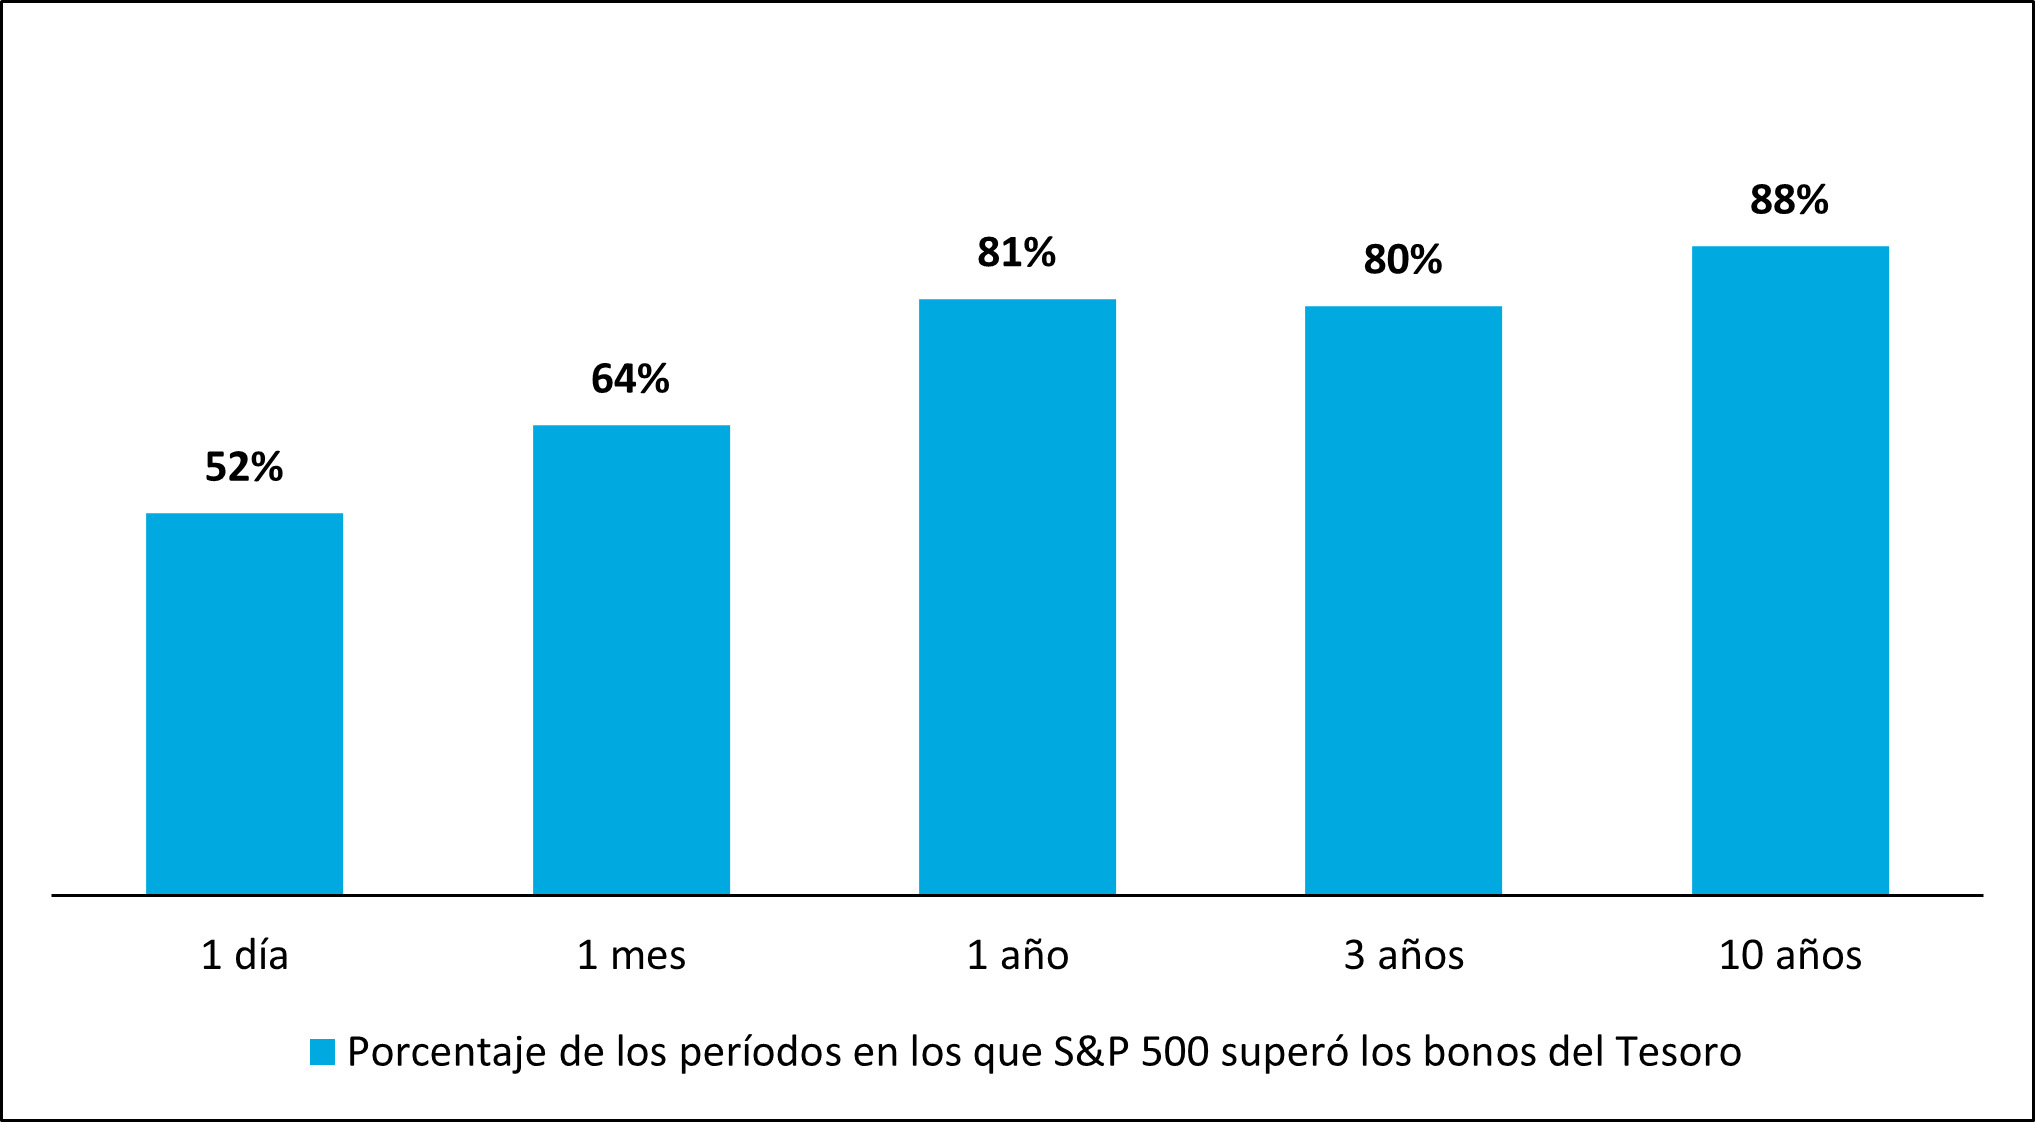 Gráfico de barras que muestra el porcentaje de períodos consecutivos en los que el S&P 500 superó a los bonos del Tesoro de EE. UU.; la probabilidad de que las acciones superen el desempeño del efectivo aumenta históricamente con el tiempo.